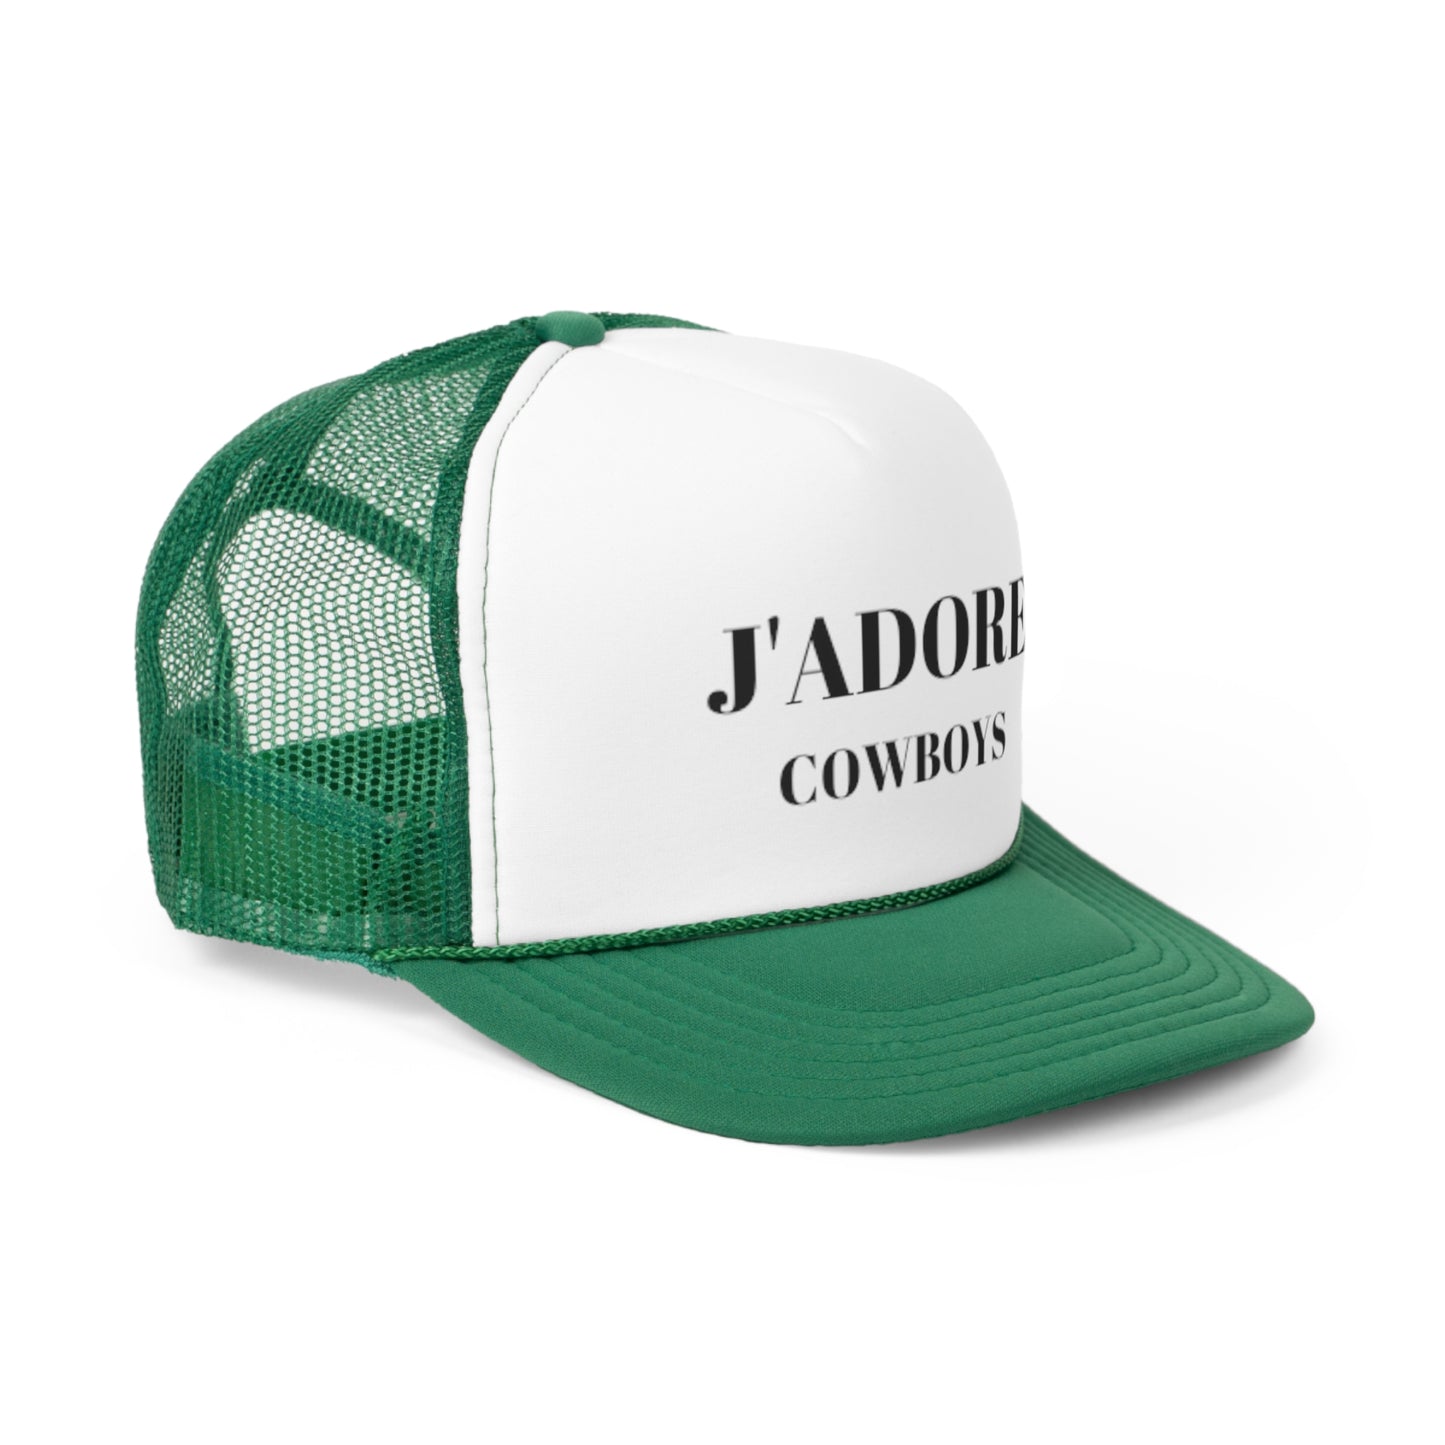 J'Adore Cowboys: Trucker Caps